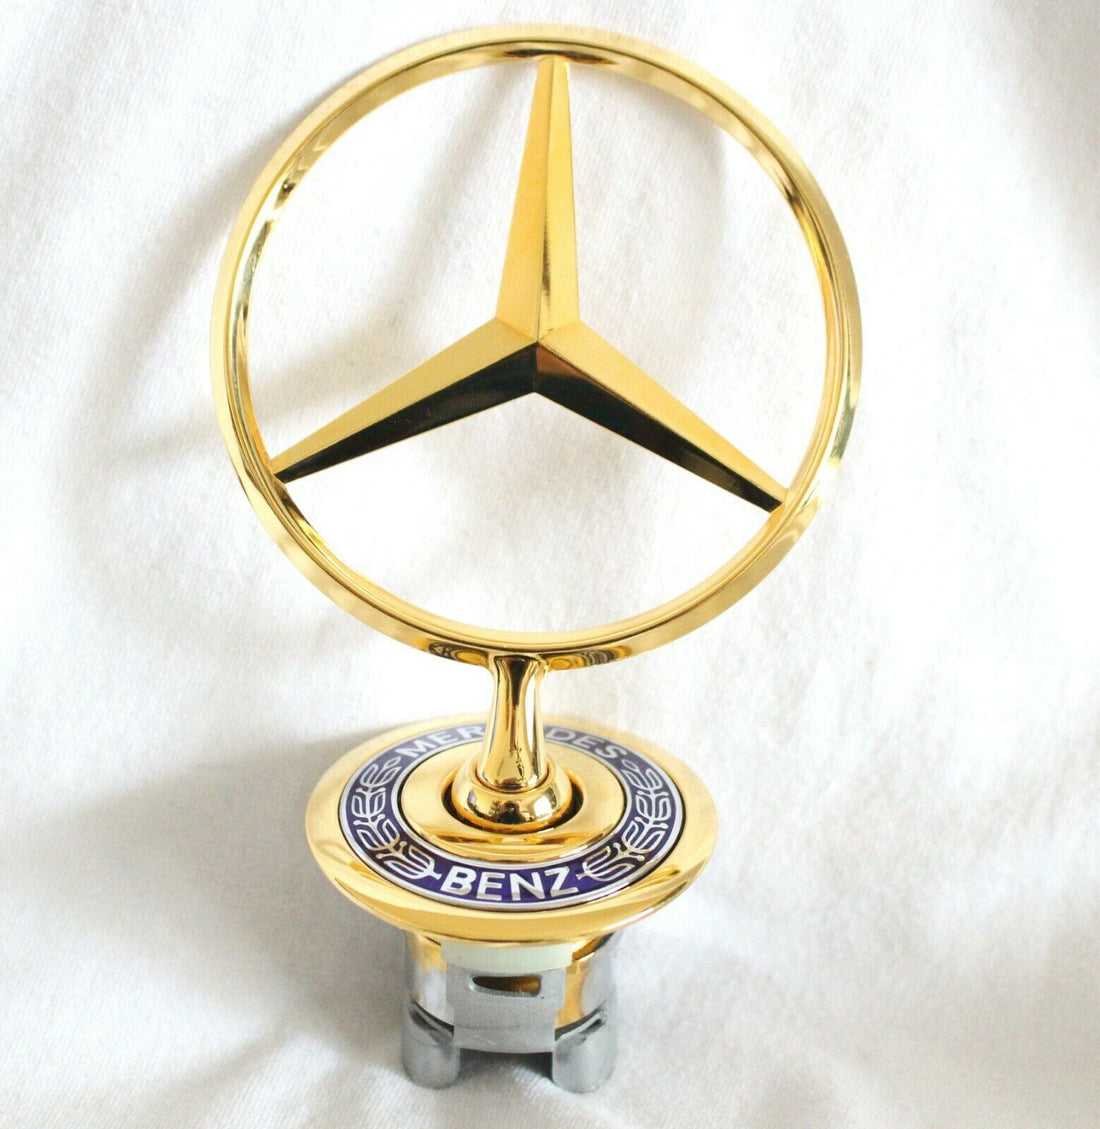 Mercedes guld emblem